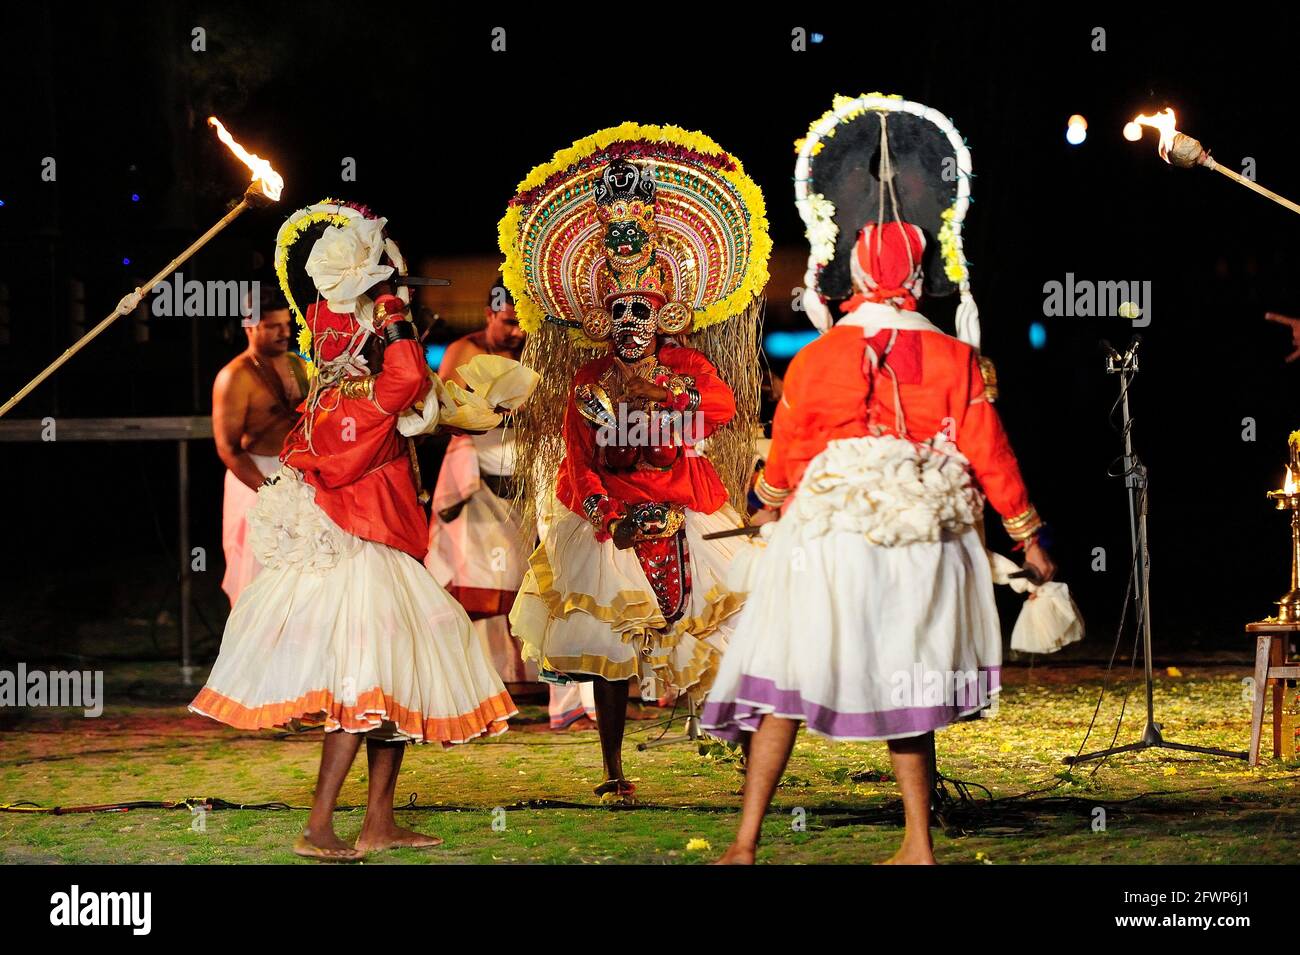 Mudijettu. Teatro ritual del templo de Kerala, Mudijettu. Teatro ritual de los templos de Kerala, la historia de los hechos heroicos de Bhadrakala - la historia del asesinato del demonio Darika (d‚rikavadham) ritual de culto de fertilidad, ritual de Kerala, foto kazimierz jurewicz, MUDIJETTU es probablemente una de las tradiciones teatrales más antiguas de la India Foto de stock